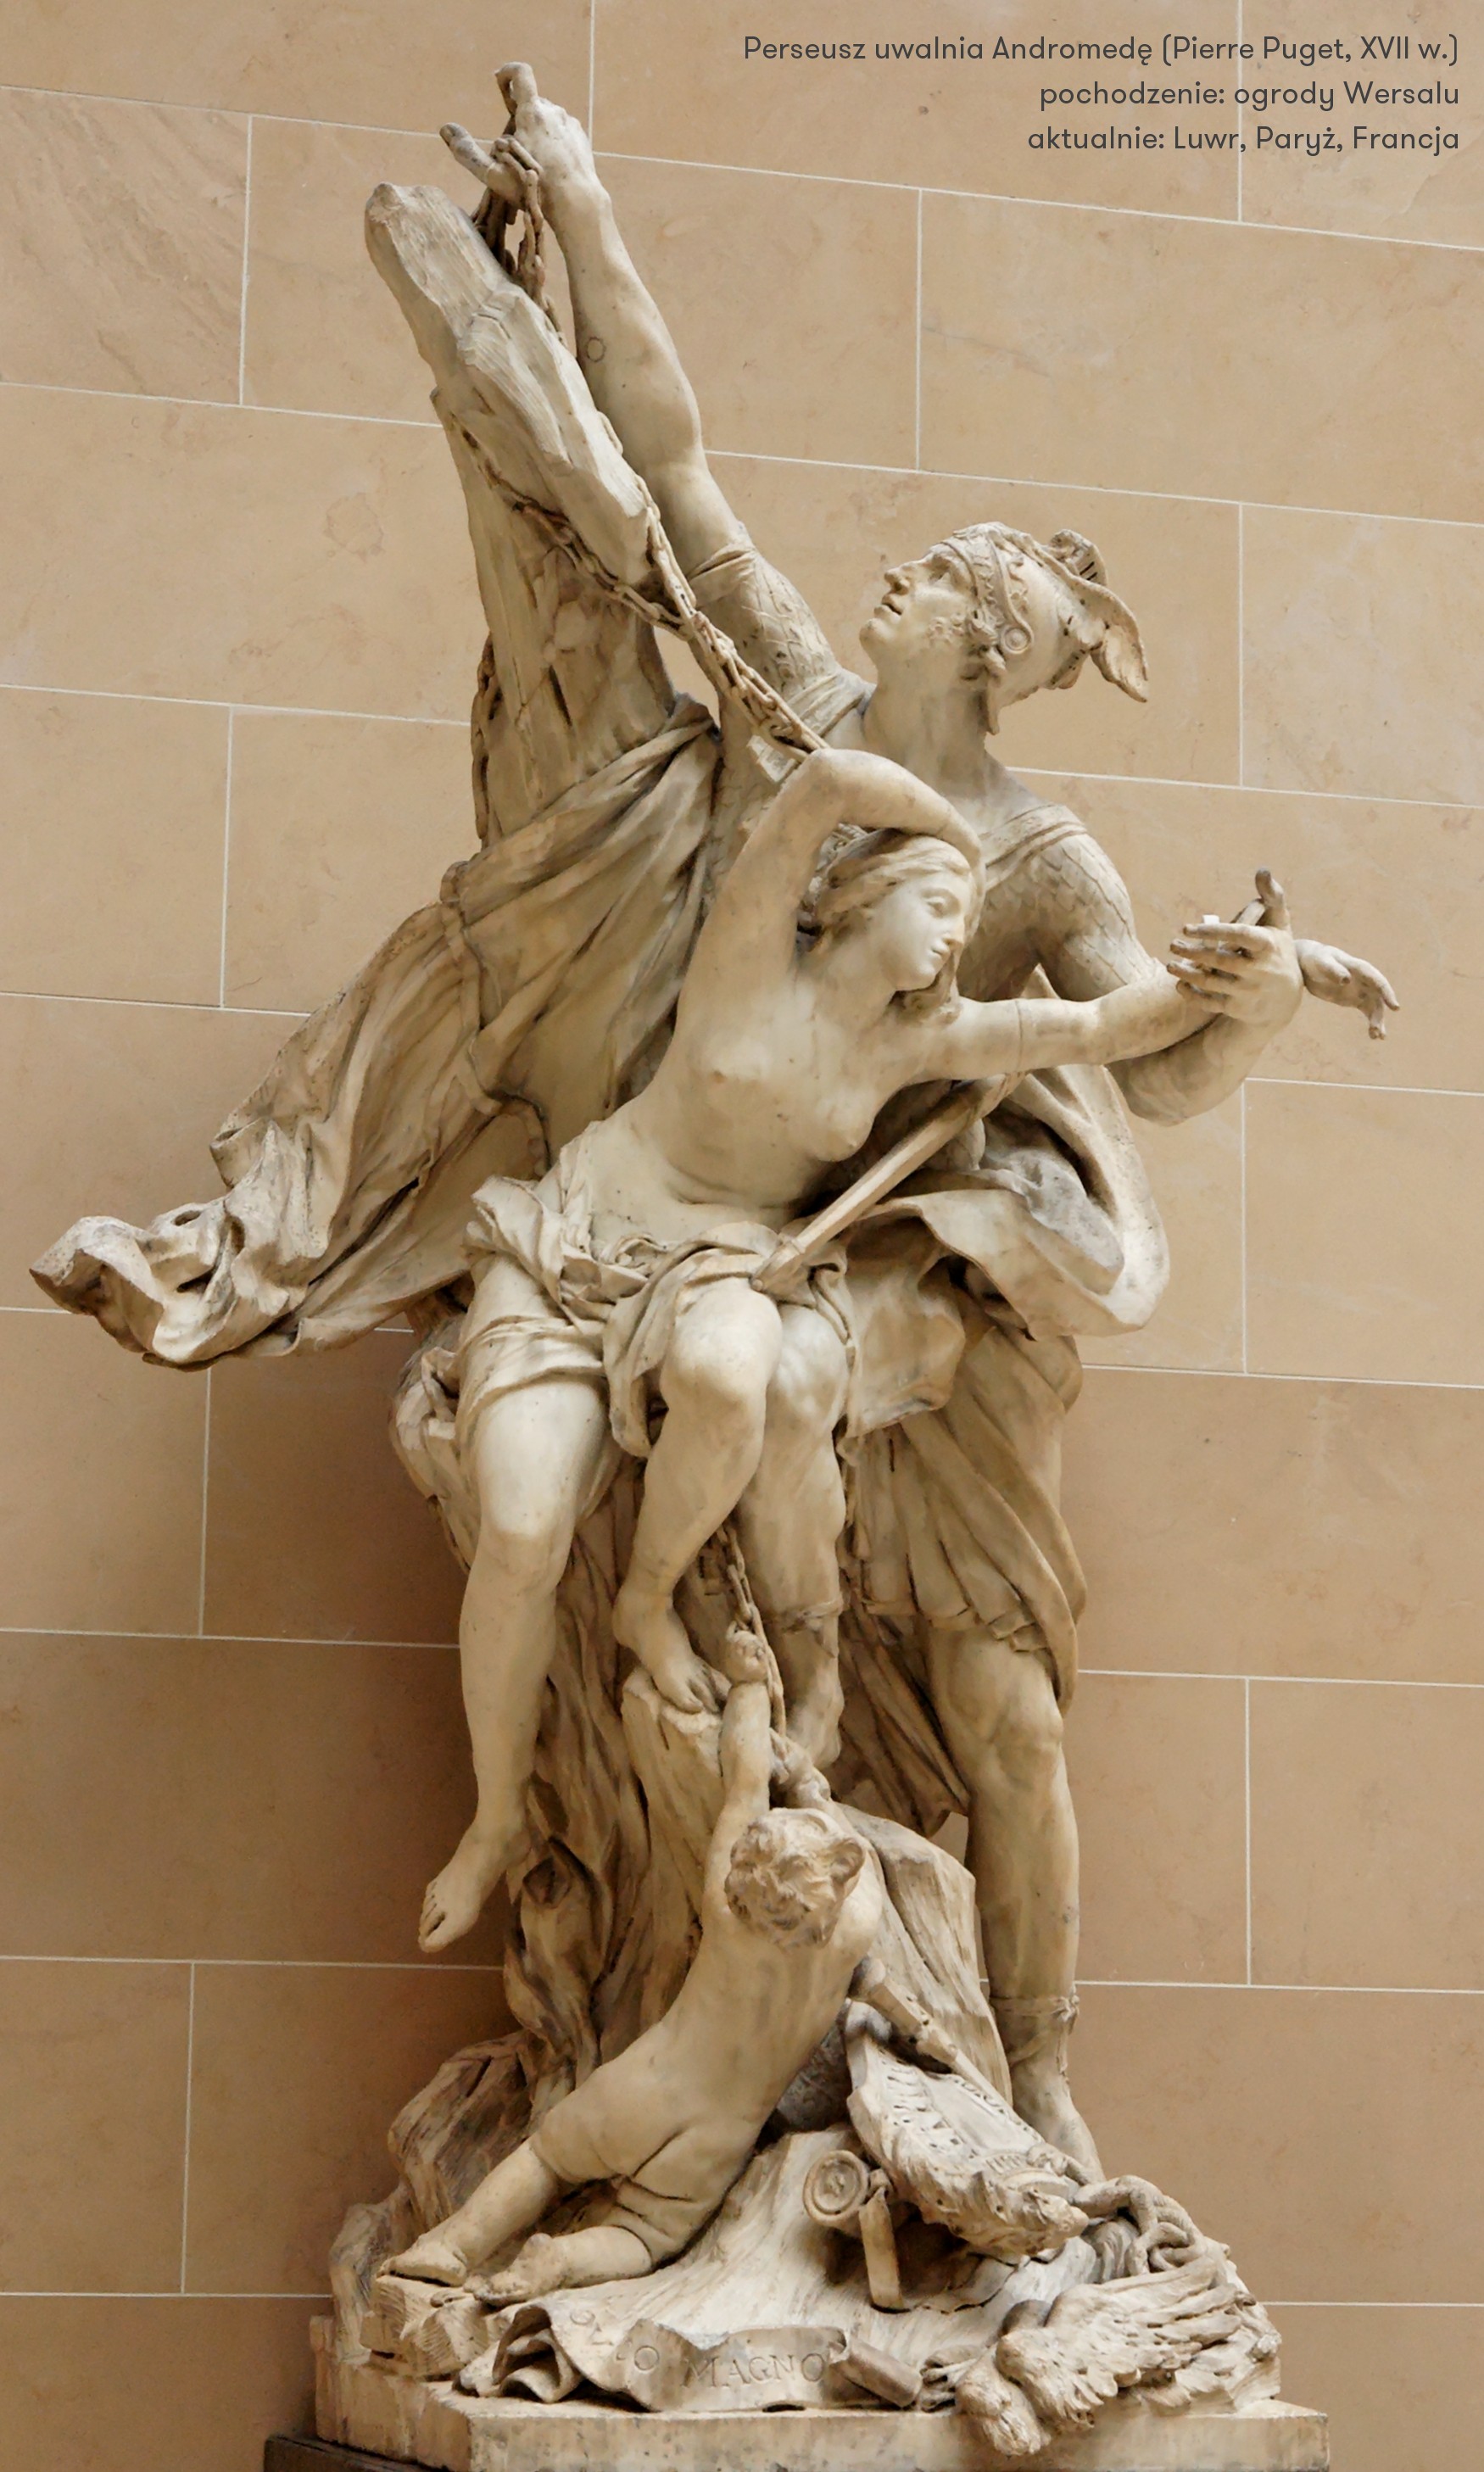 Perseusz uwalnia Andromedę (Pierre Puget, XVII - Luwr, Paryż)